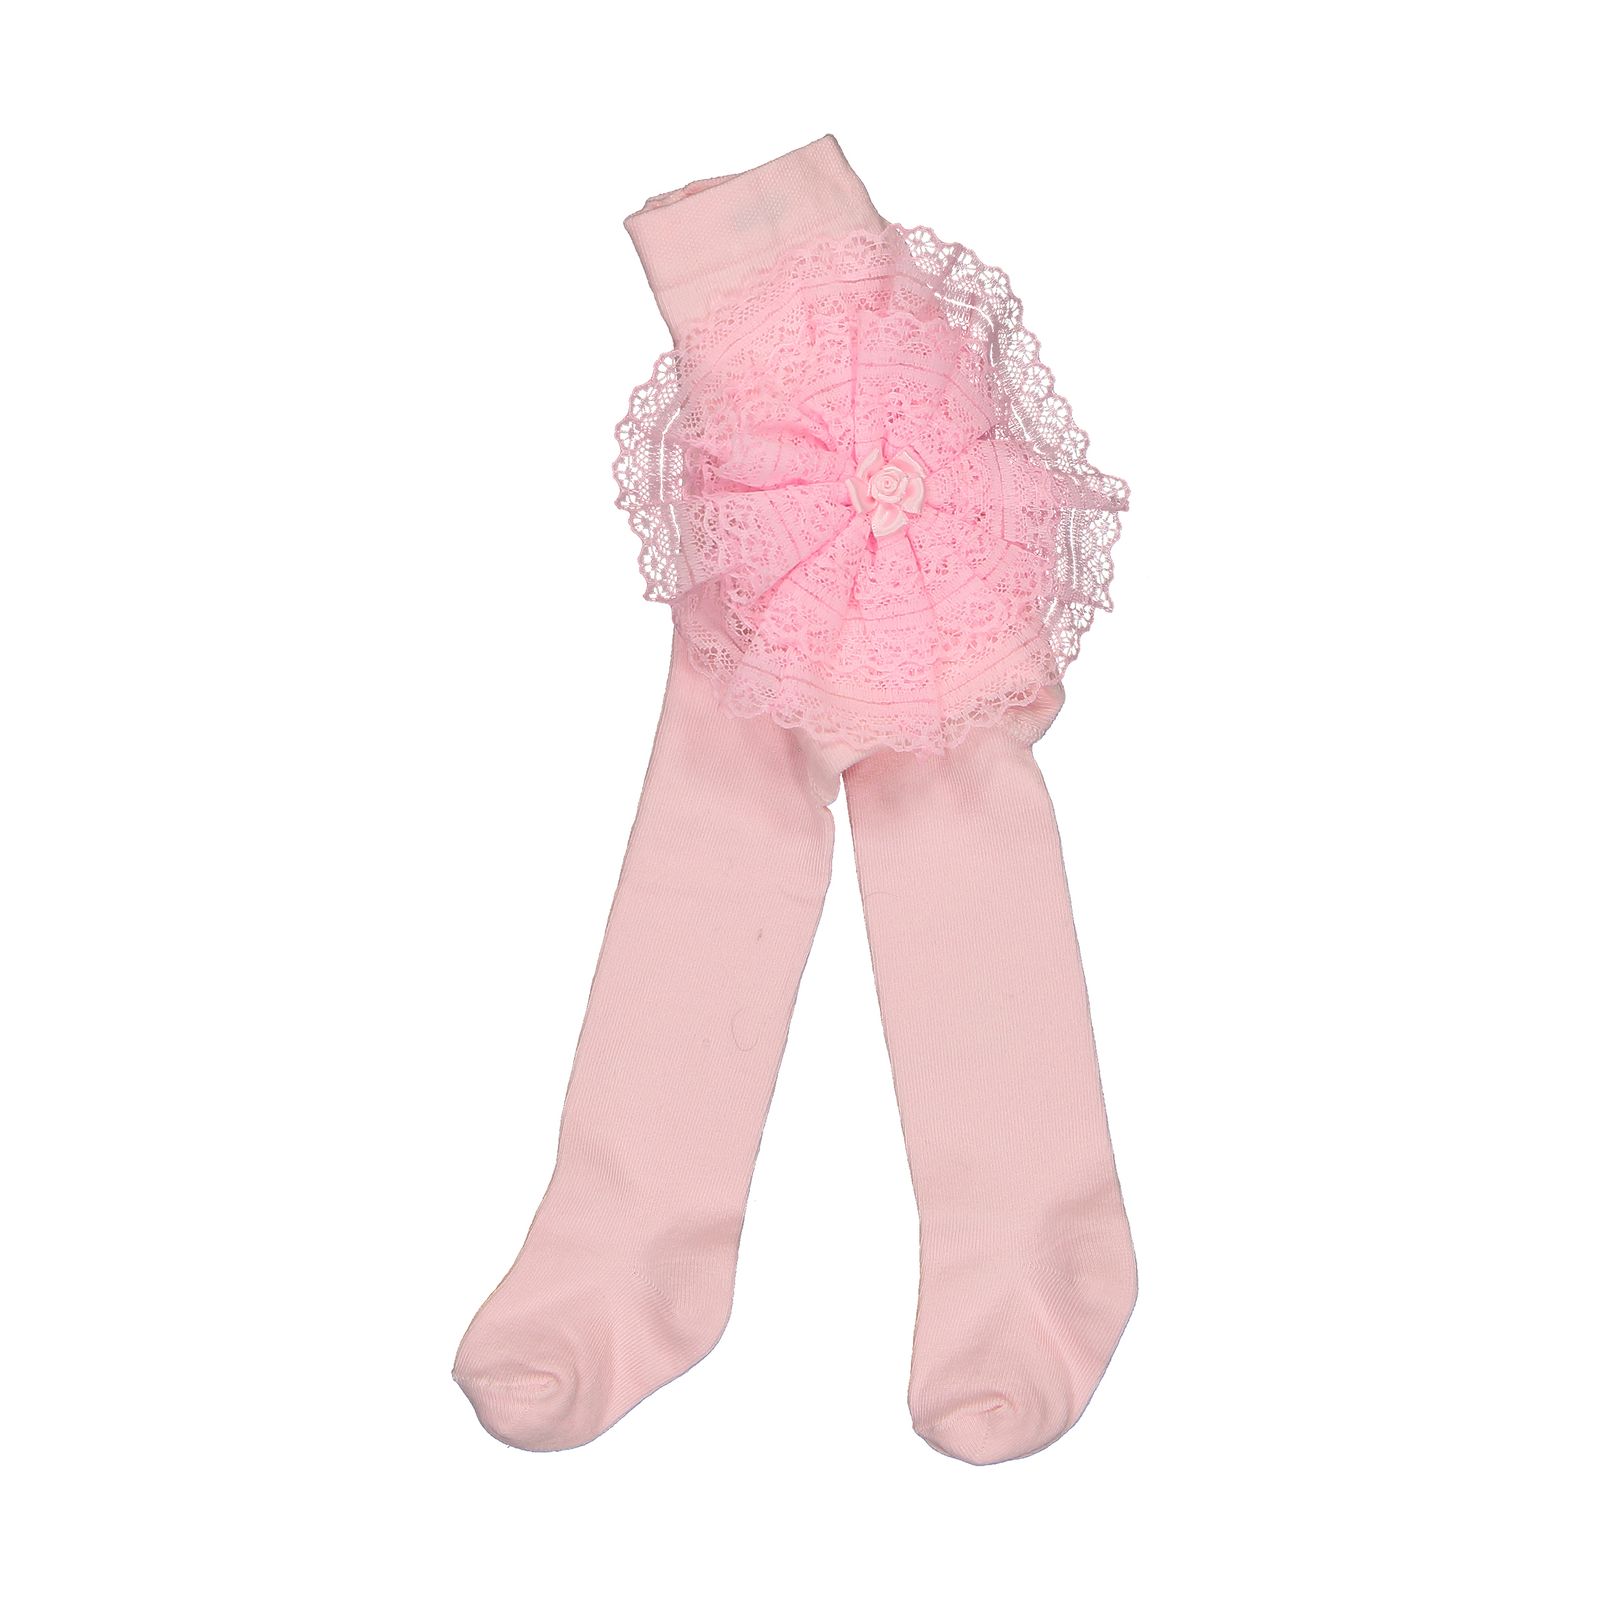 جوراب شلواری نوزادی دخترانه فیورلا کد 2012-6-3 -  - 1